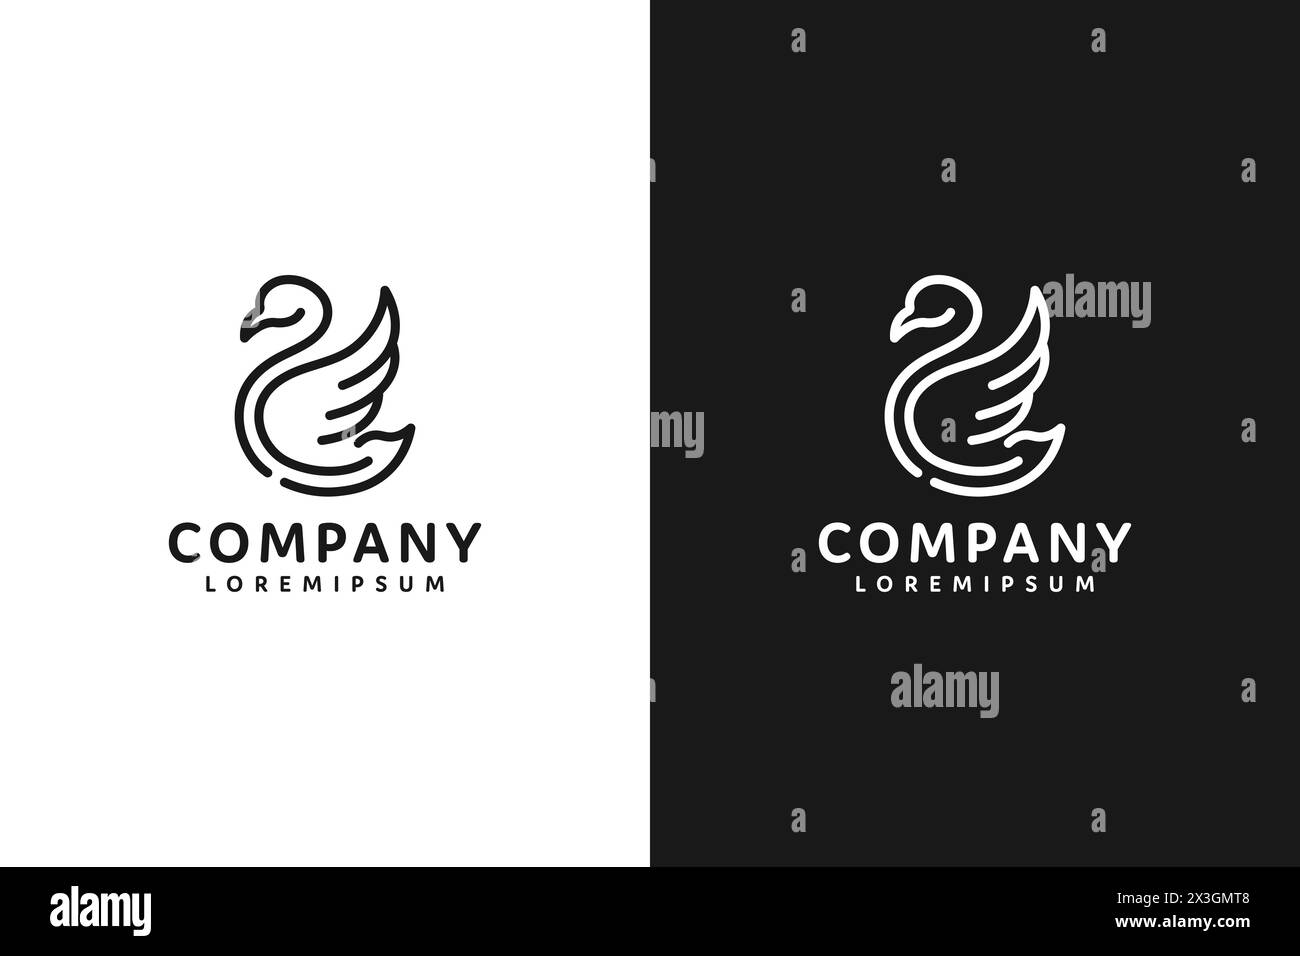 Logo noir et blanc au trait de cygne avec texte de l'entreprise écrit en dessous. Le logo est conçu pour transmettre une impression d'élégance et de grâce, et est su Illustration de Vecteur